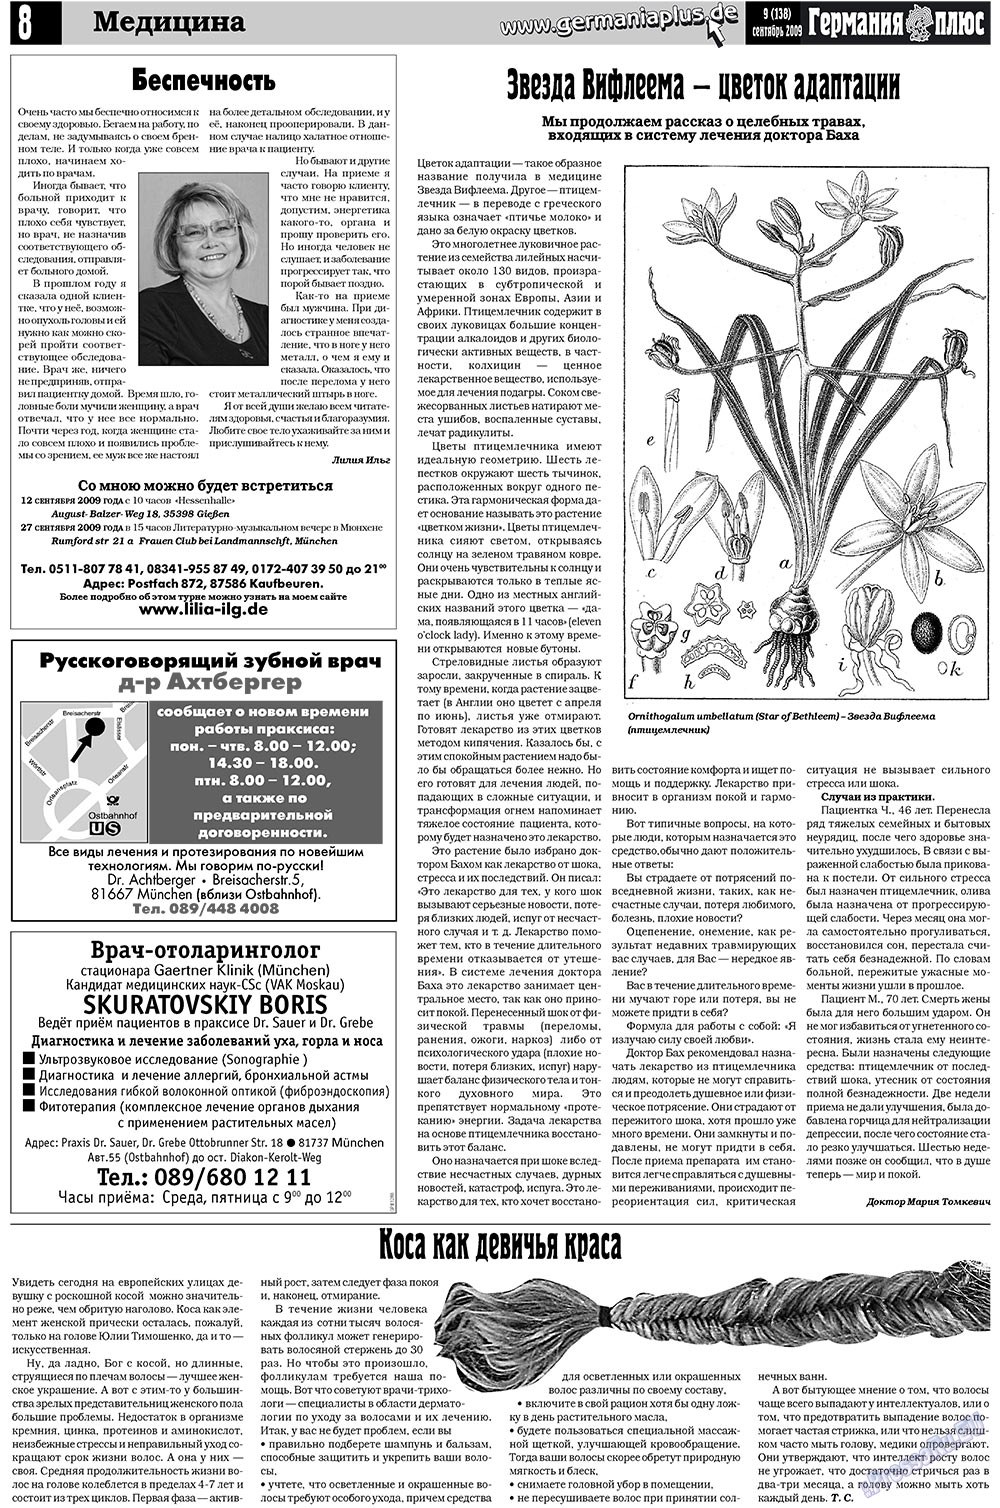 Германия плюс (газета). 2009 год, номер 9, стр. 12